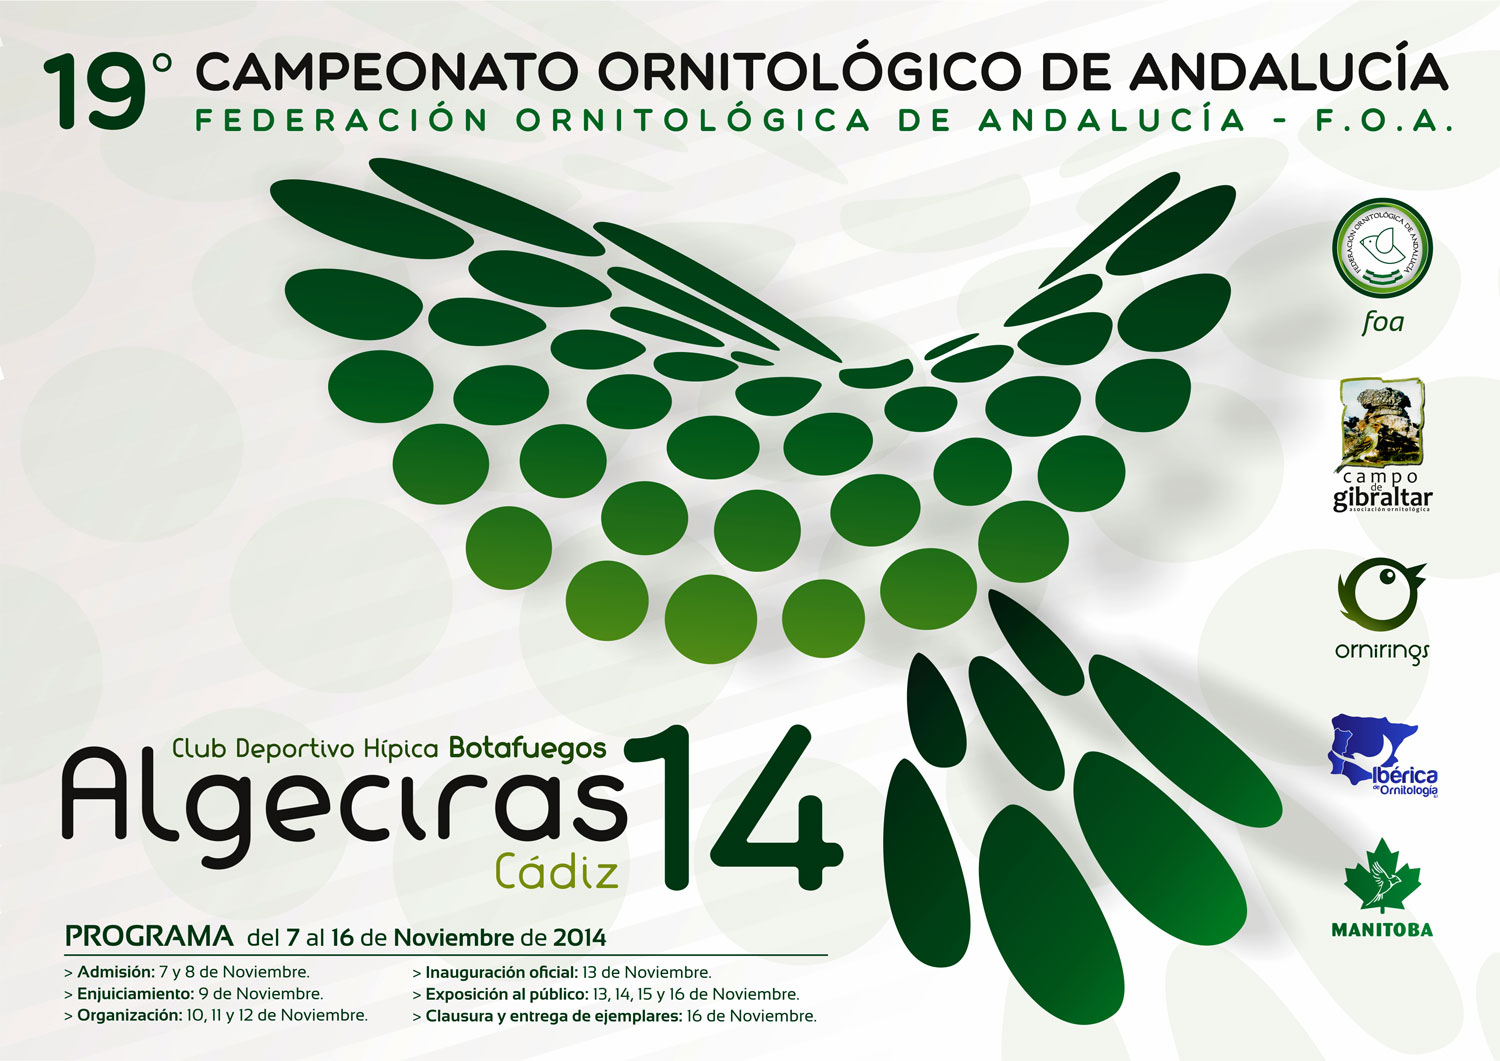 Algeciras2014.jpg